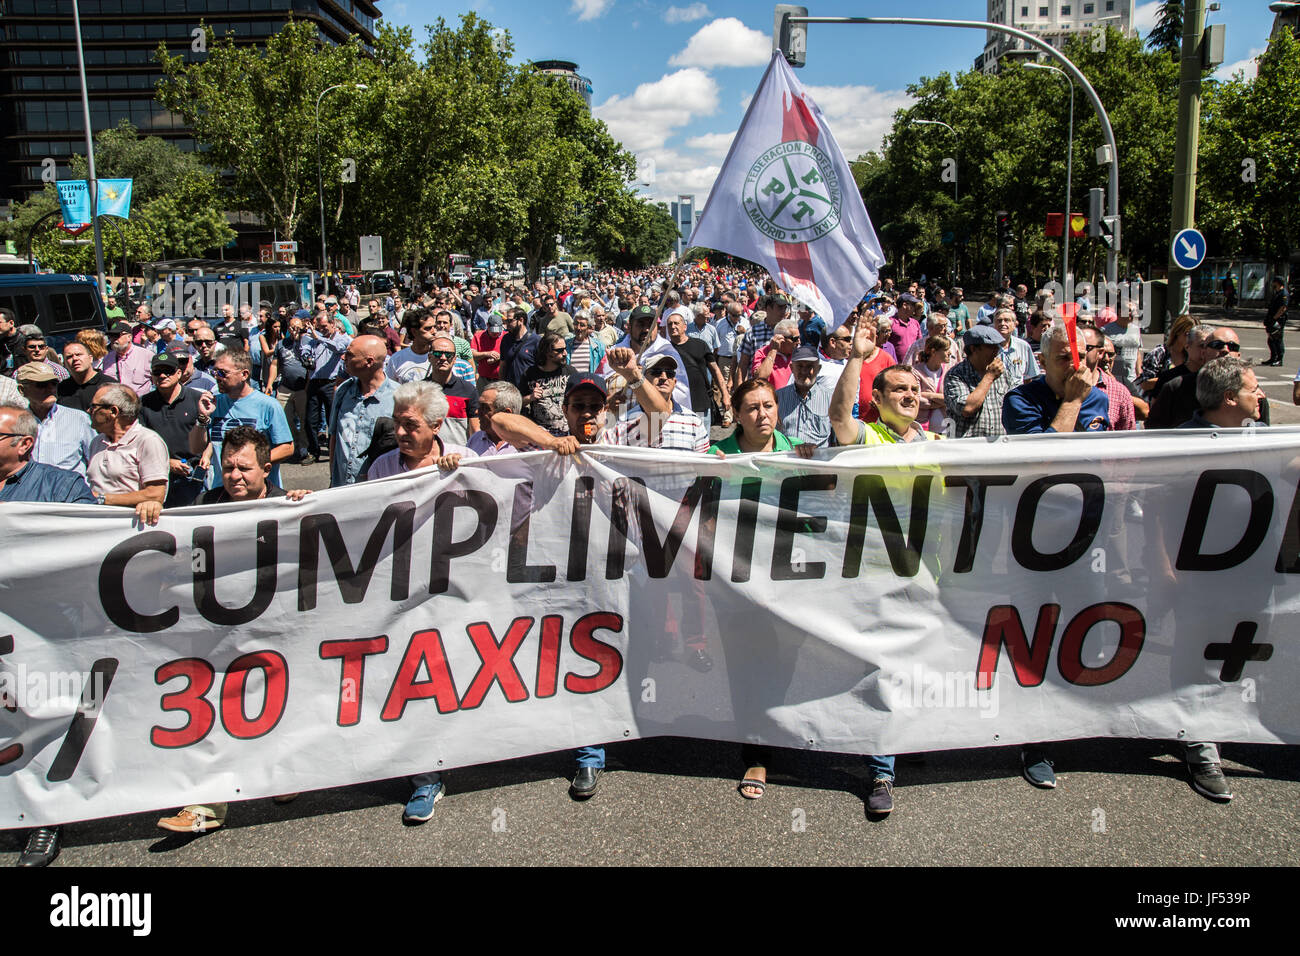 Madrid, España. El 29 de junio, 2017. Los taxistas protestan contra Uber y Cabify exigían al gobierno a obedecer la ley, exigiendo sólo un Uber por 30 taxis. Crédito: Marcos del mazo/Alamy Live News Foto de stock